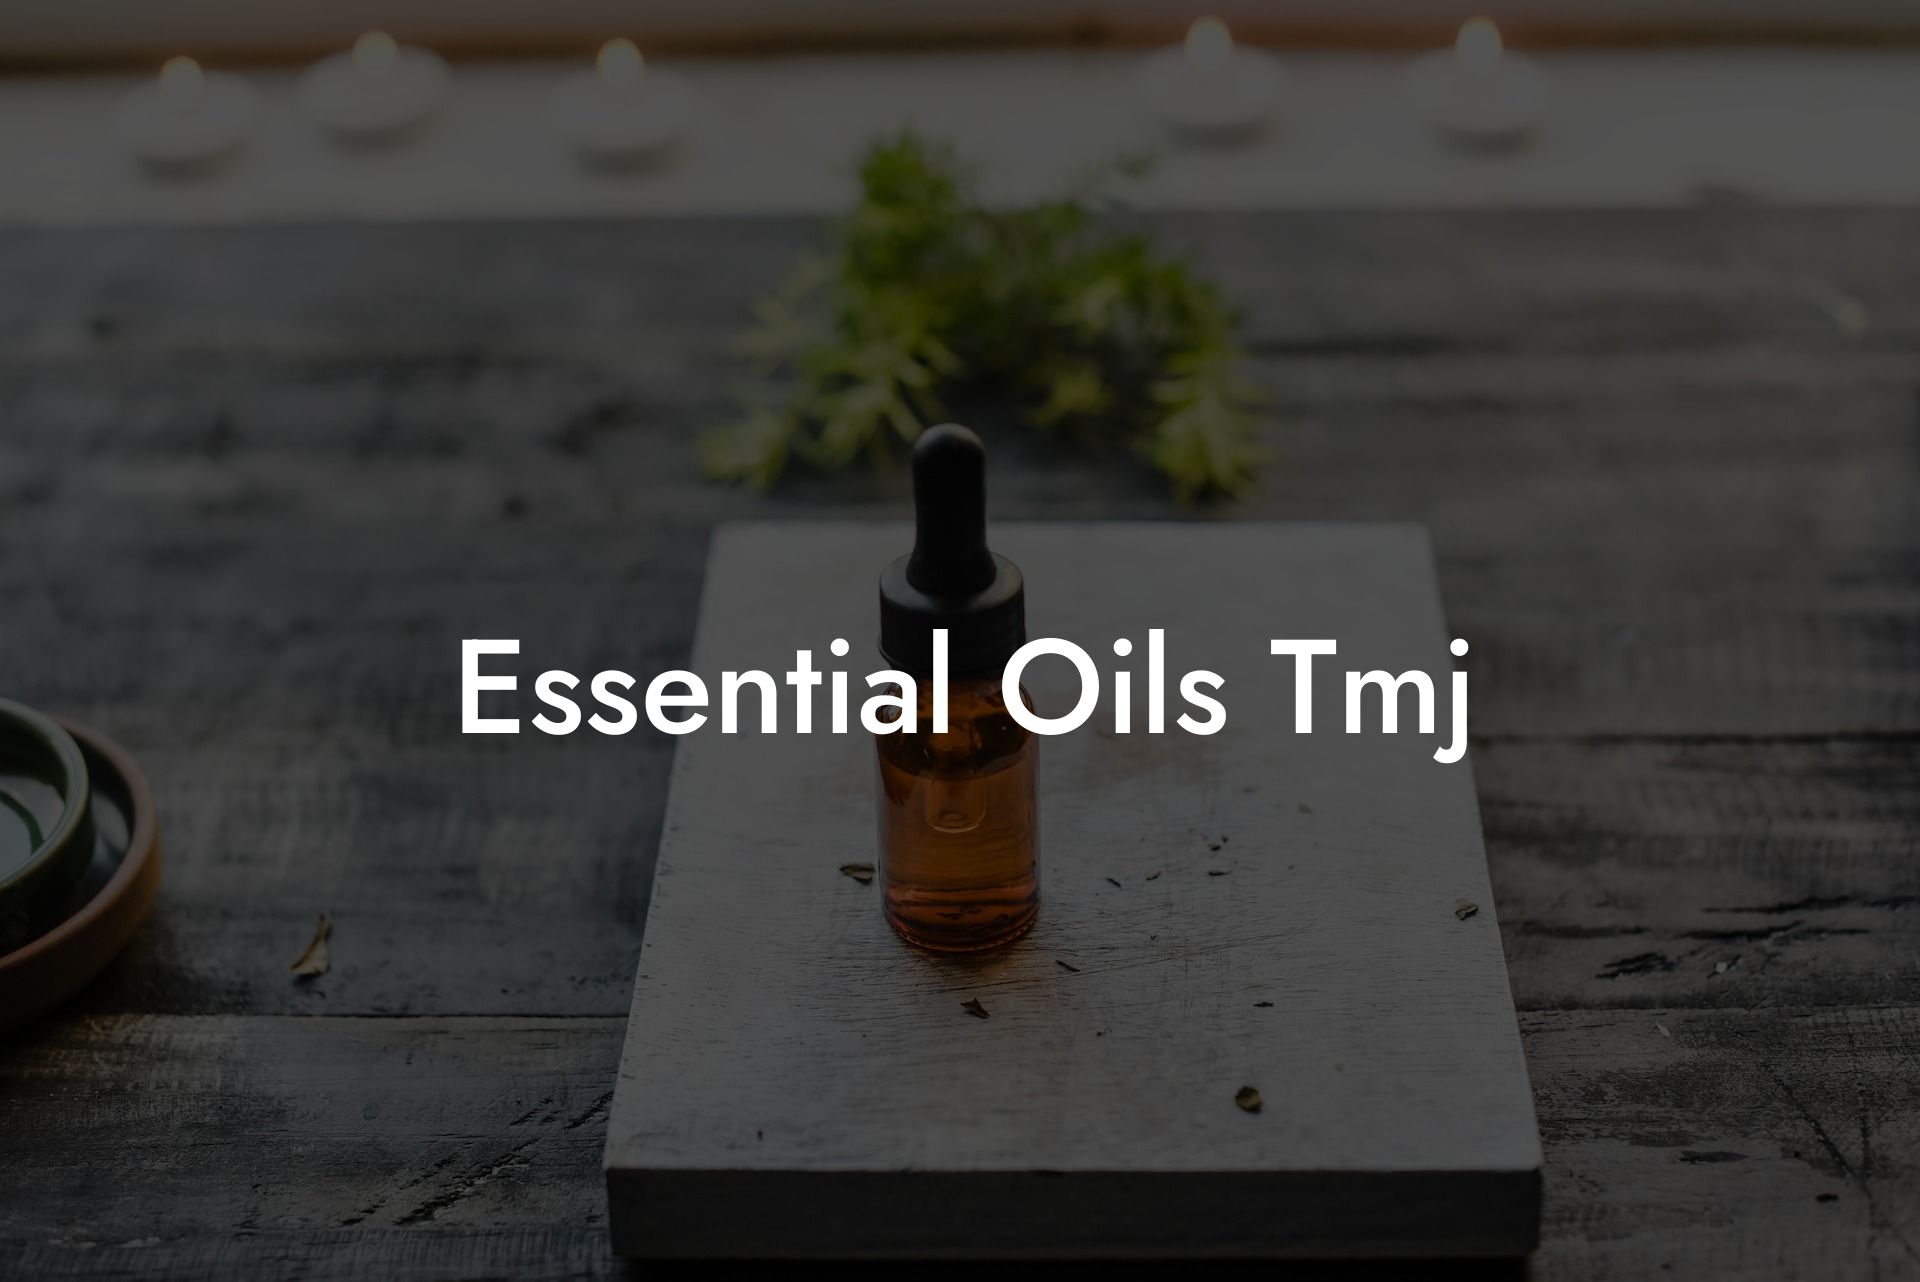 Essential Oils Tmj